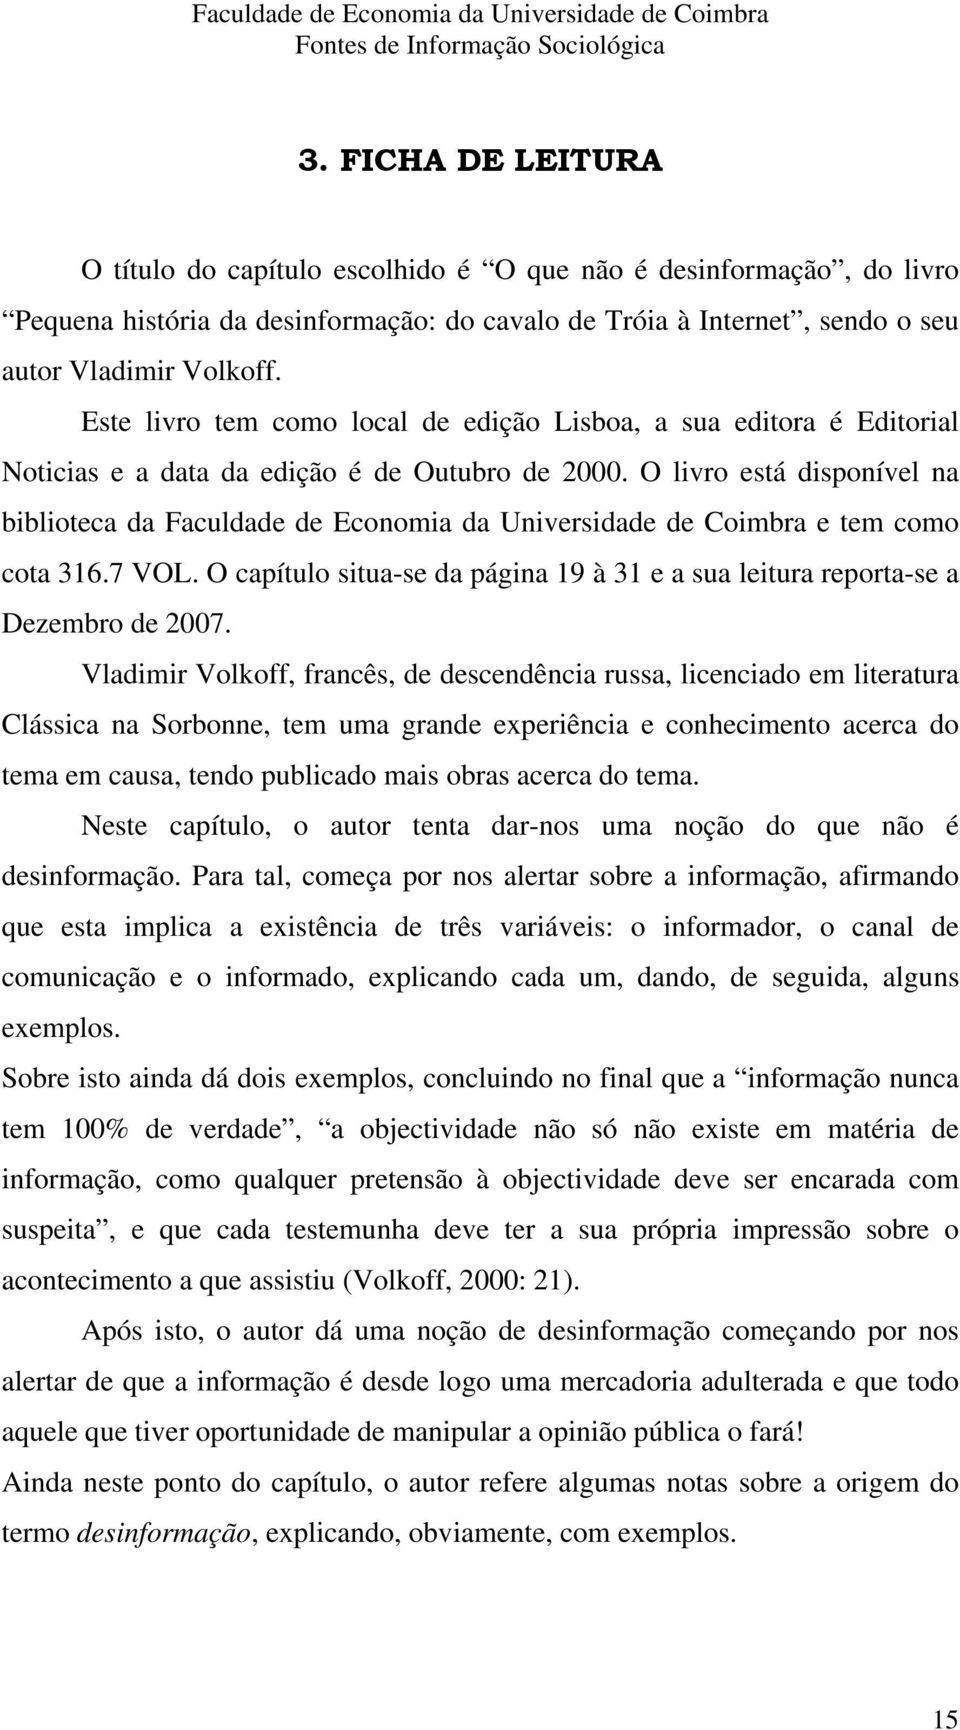 O livro está disponível na biblioteca da Faculdade de Economia da Universidade de Coimbra e tem como cota 316.7 VOL.